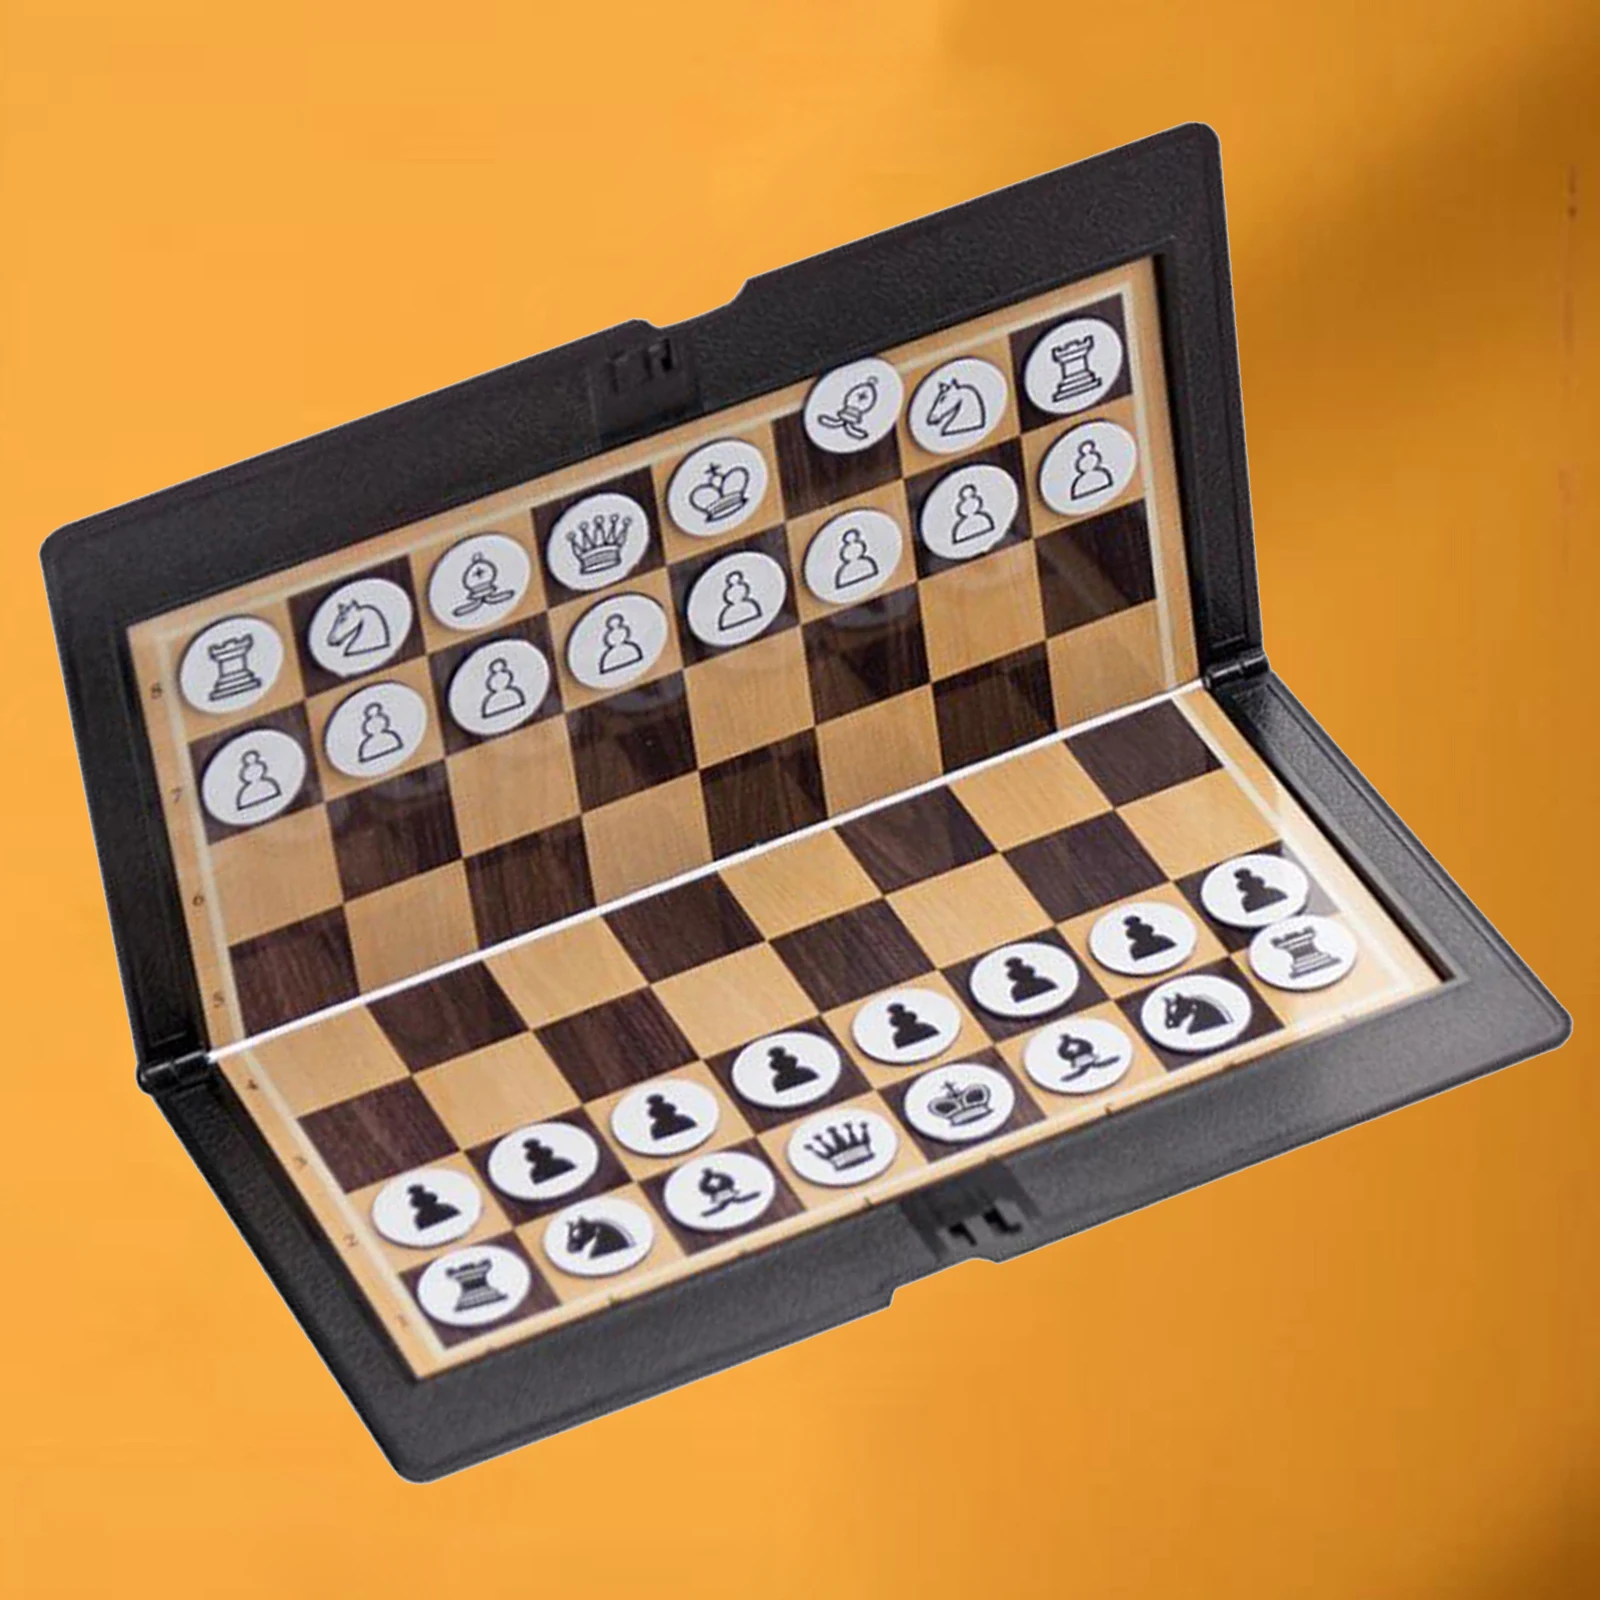 Magnetschach Reise Zusammenfaltbares Brettspiel Tragbares SpielGeschenk D1W8 